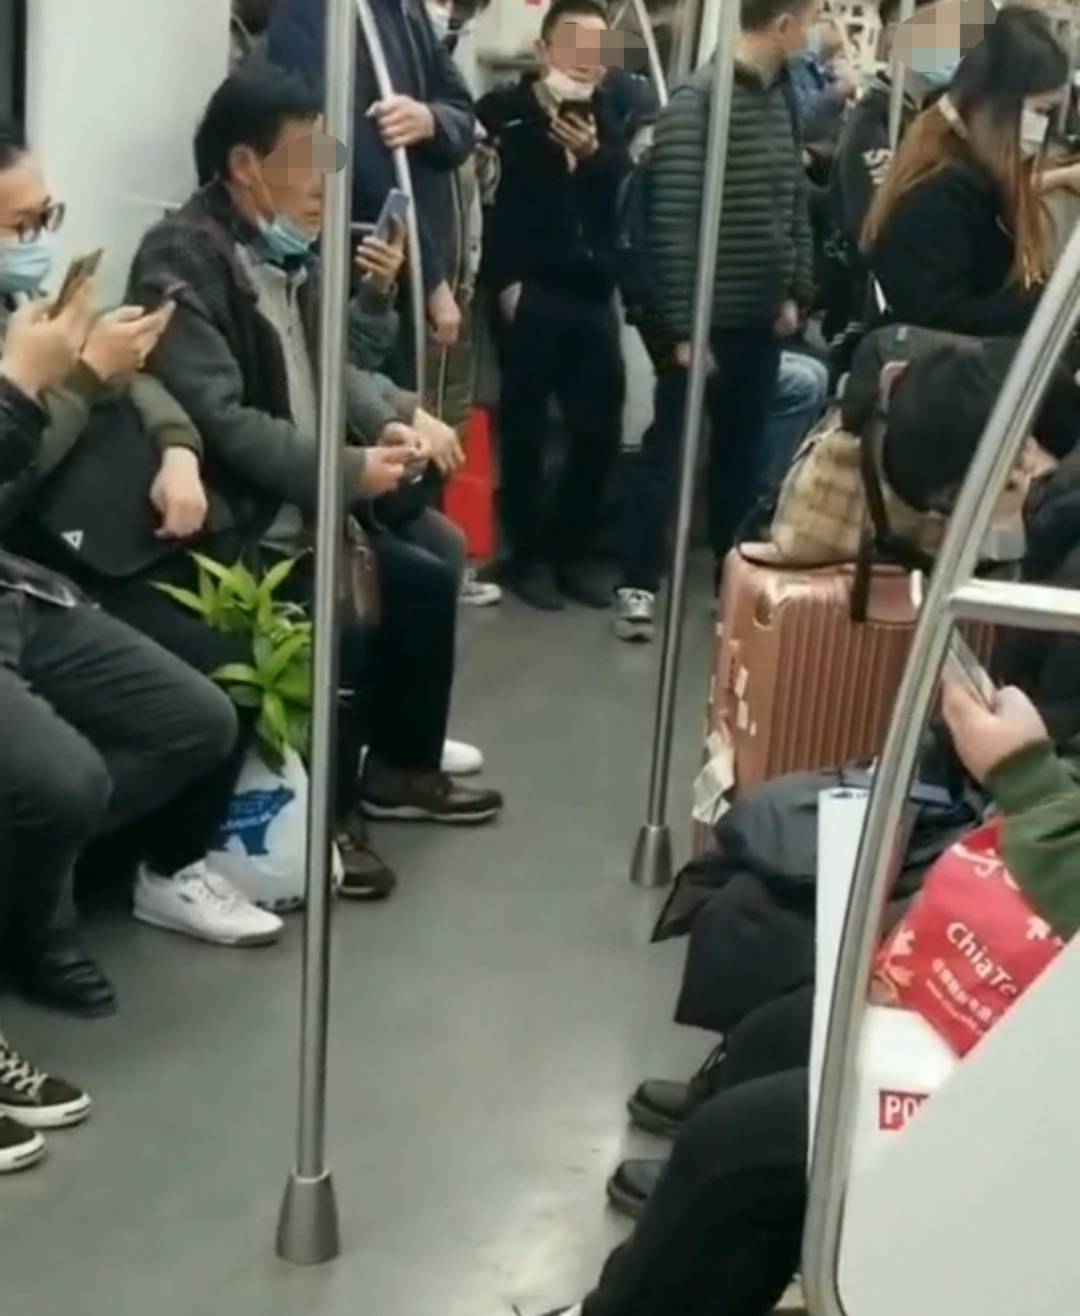 上海地铁一小伙拒绝给7旬老人让座,被老人斥责:你没礼貌,没教养